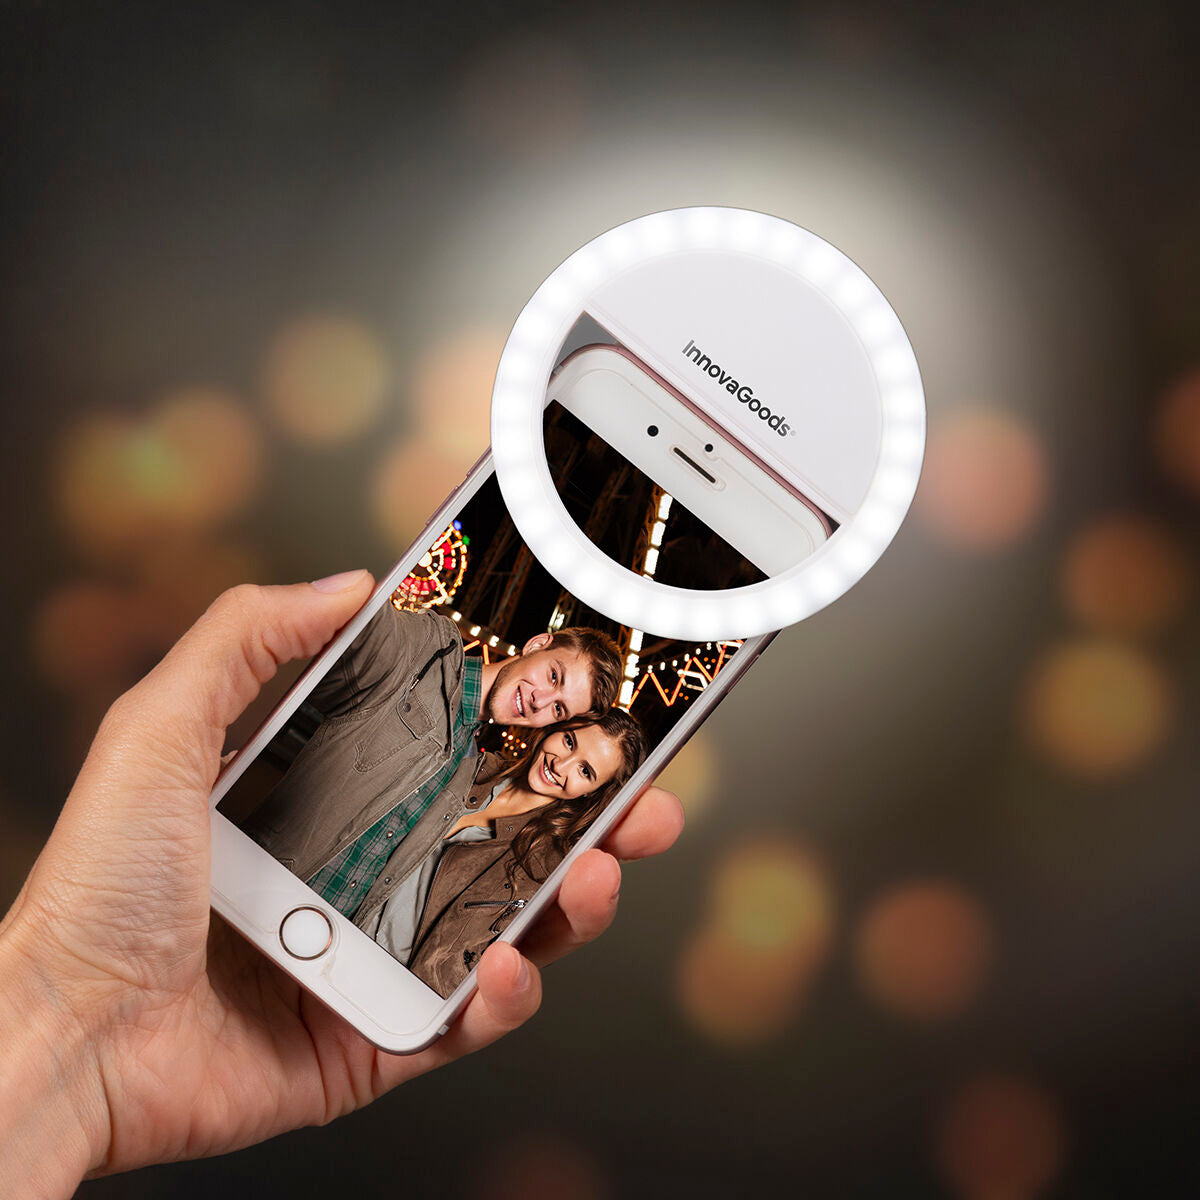 Oplaadbaar Selfie ringlampje Instahoop InnovaGoods